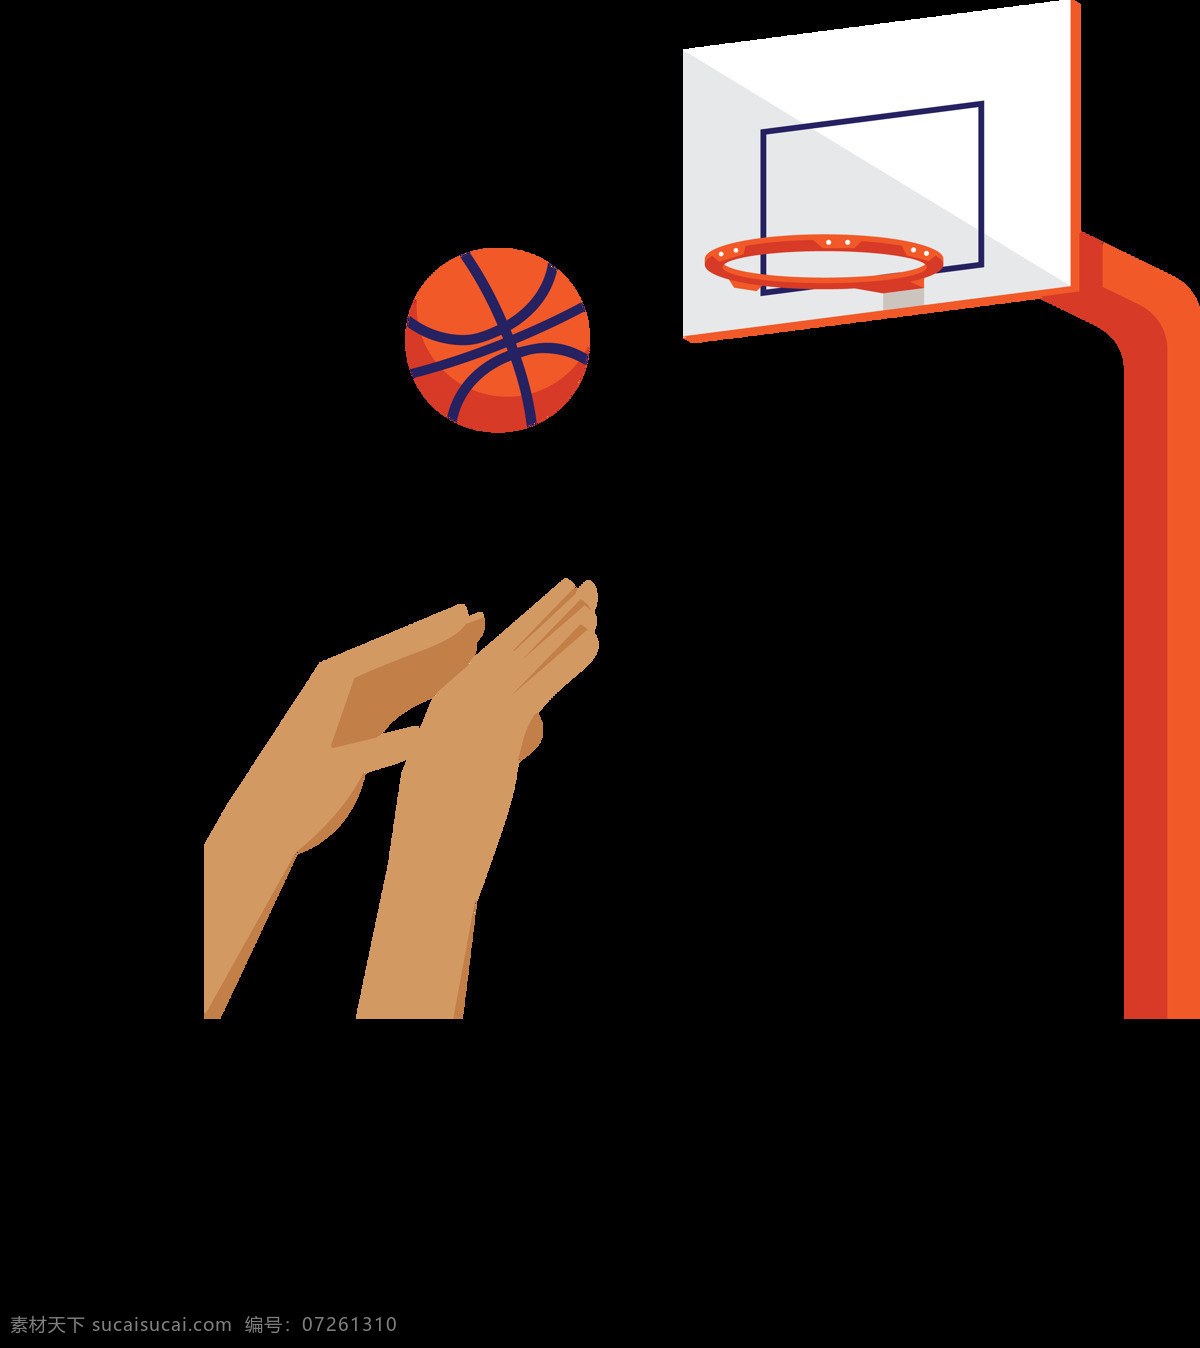 投篮 动作 插图 免 抠 透明 图 层 打蓝球 蓝球运动 nba cba 篮球比赛 篮球手绘元素 卡通篮球 篮球海报 篮球运动员 投篮剪影 篮球素材 手绘篮球 篮球插图